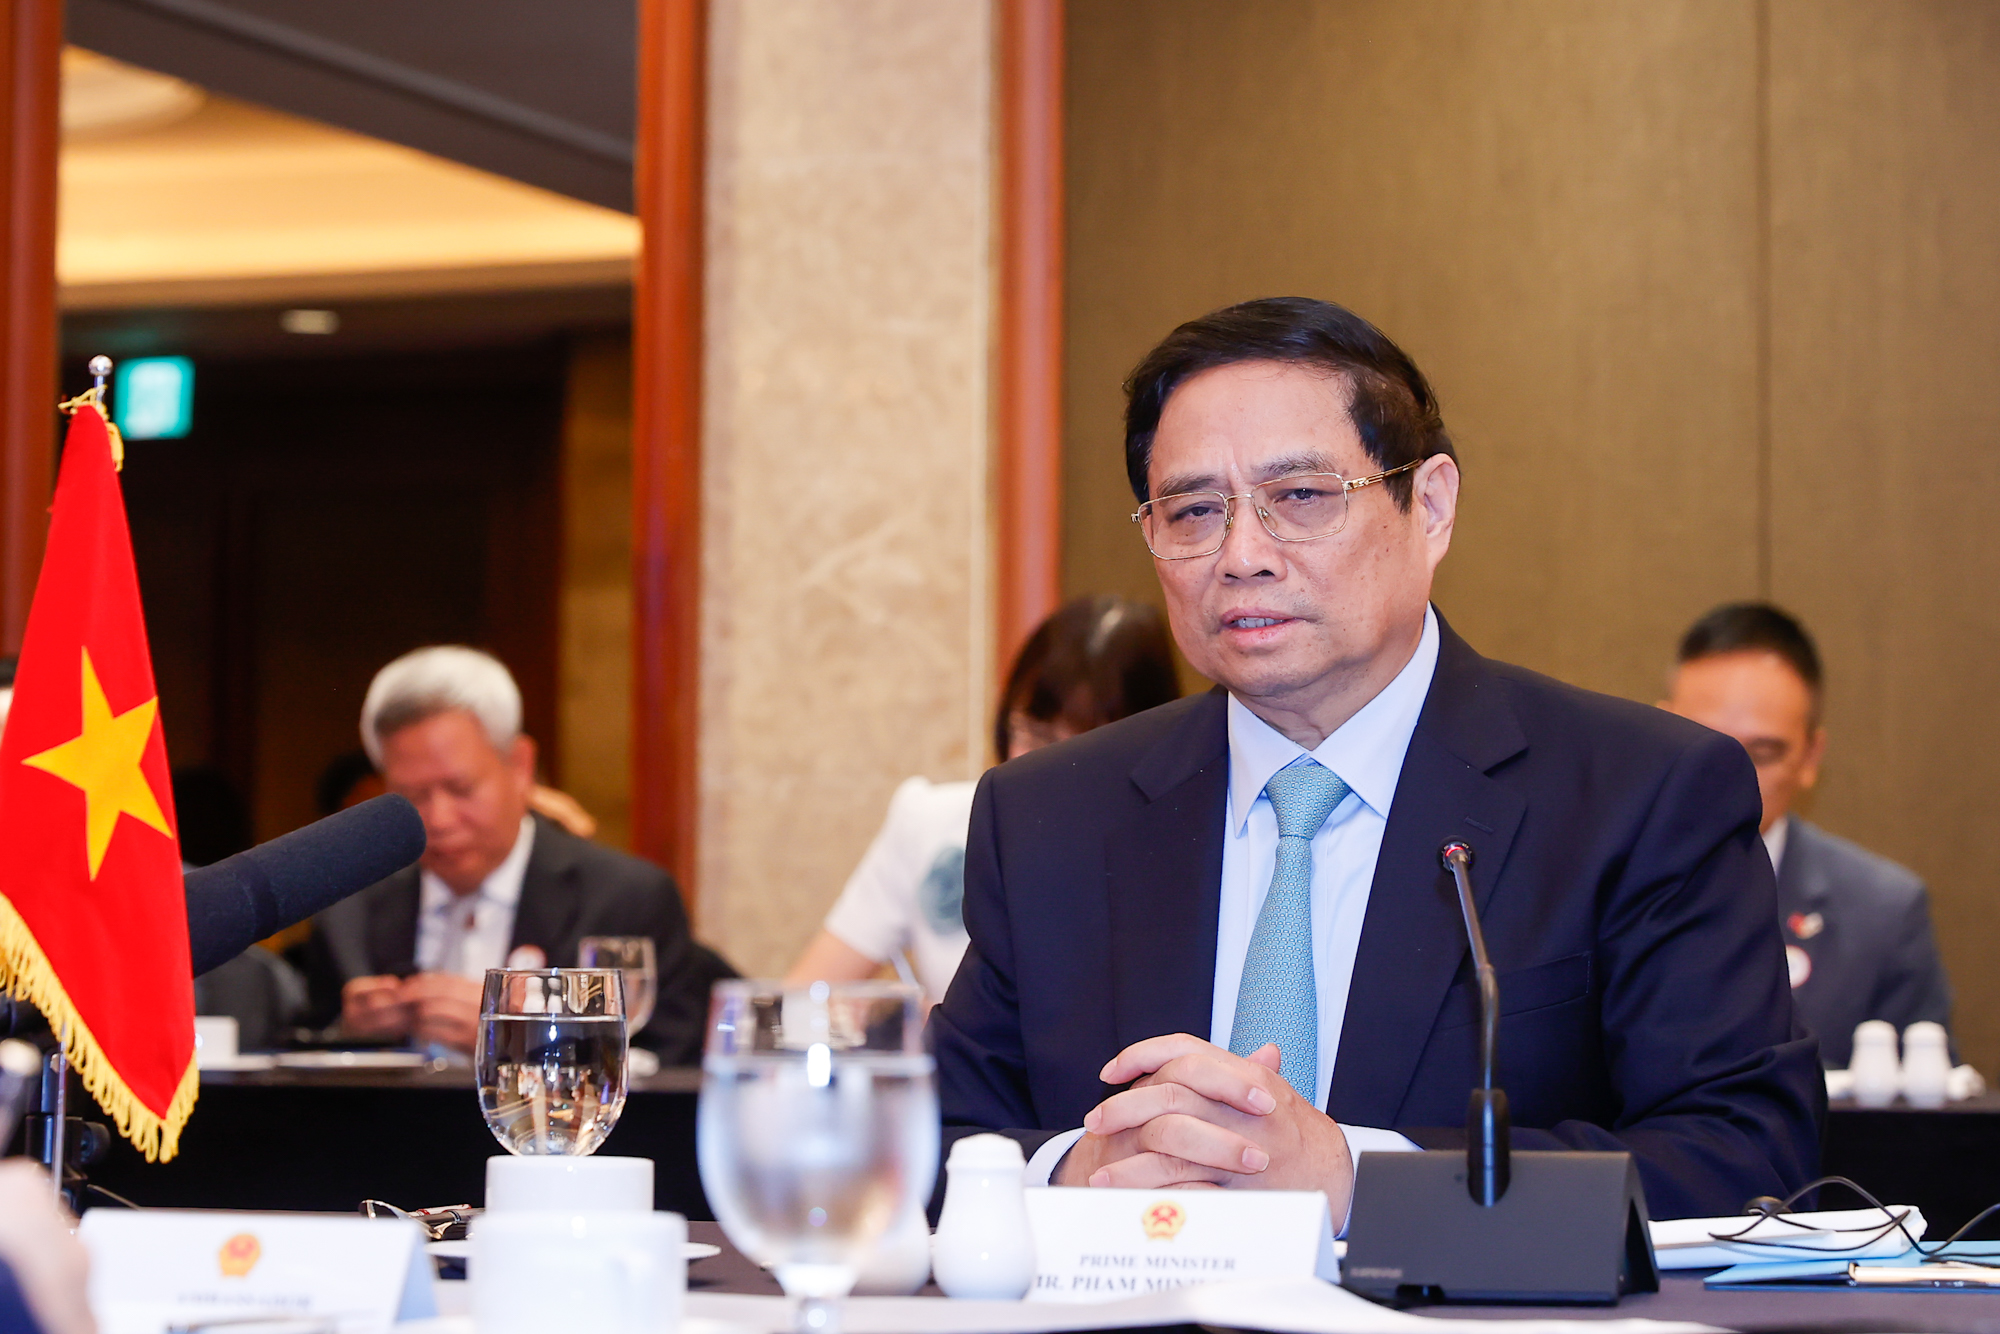 Thủ tướng Phạm Minh Chính cho biết, cùng với thúc đẩy phát triển kinh tế xanh, kinh tế số, kinh tế tuần hoàn, kinh tế chia sẻ, Việt Nam xác định tập trung phát triển các ngành mang lại giá trị cao, nhất là các ngành mới nổi như bán dẫn, trí tuệ nhân tạo… - Ảnh: VGP/Nhật Bắc